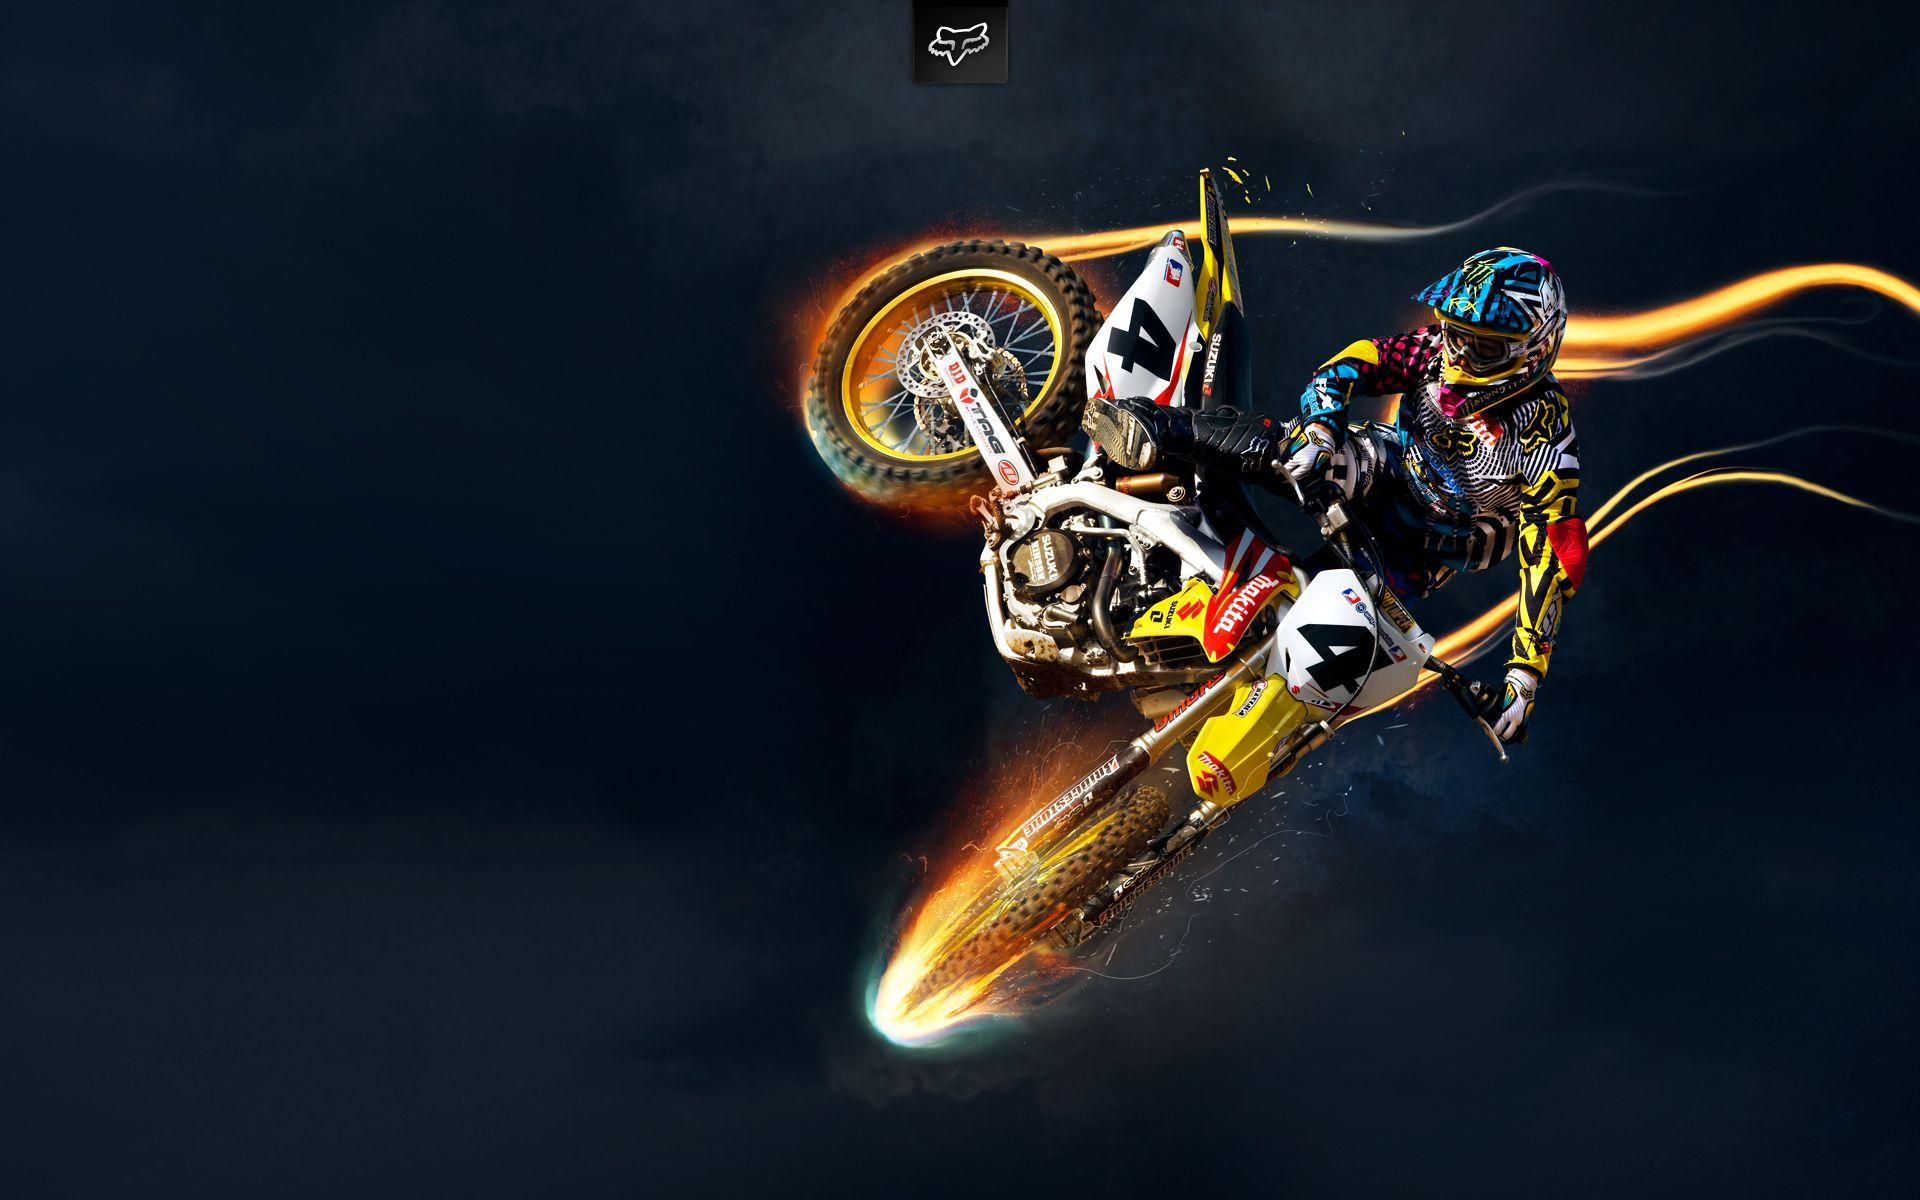 De motocross HD wallpapers